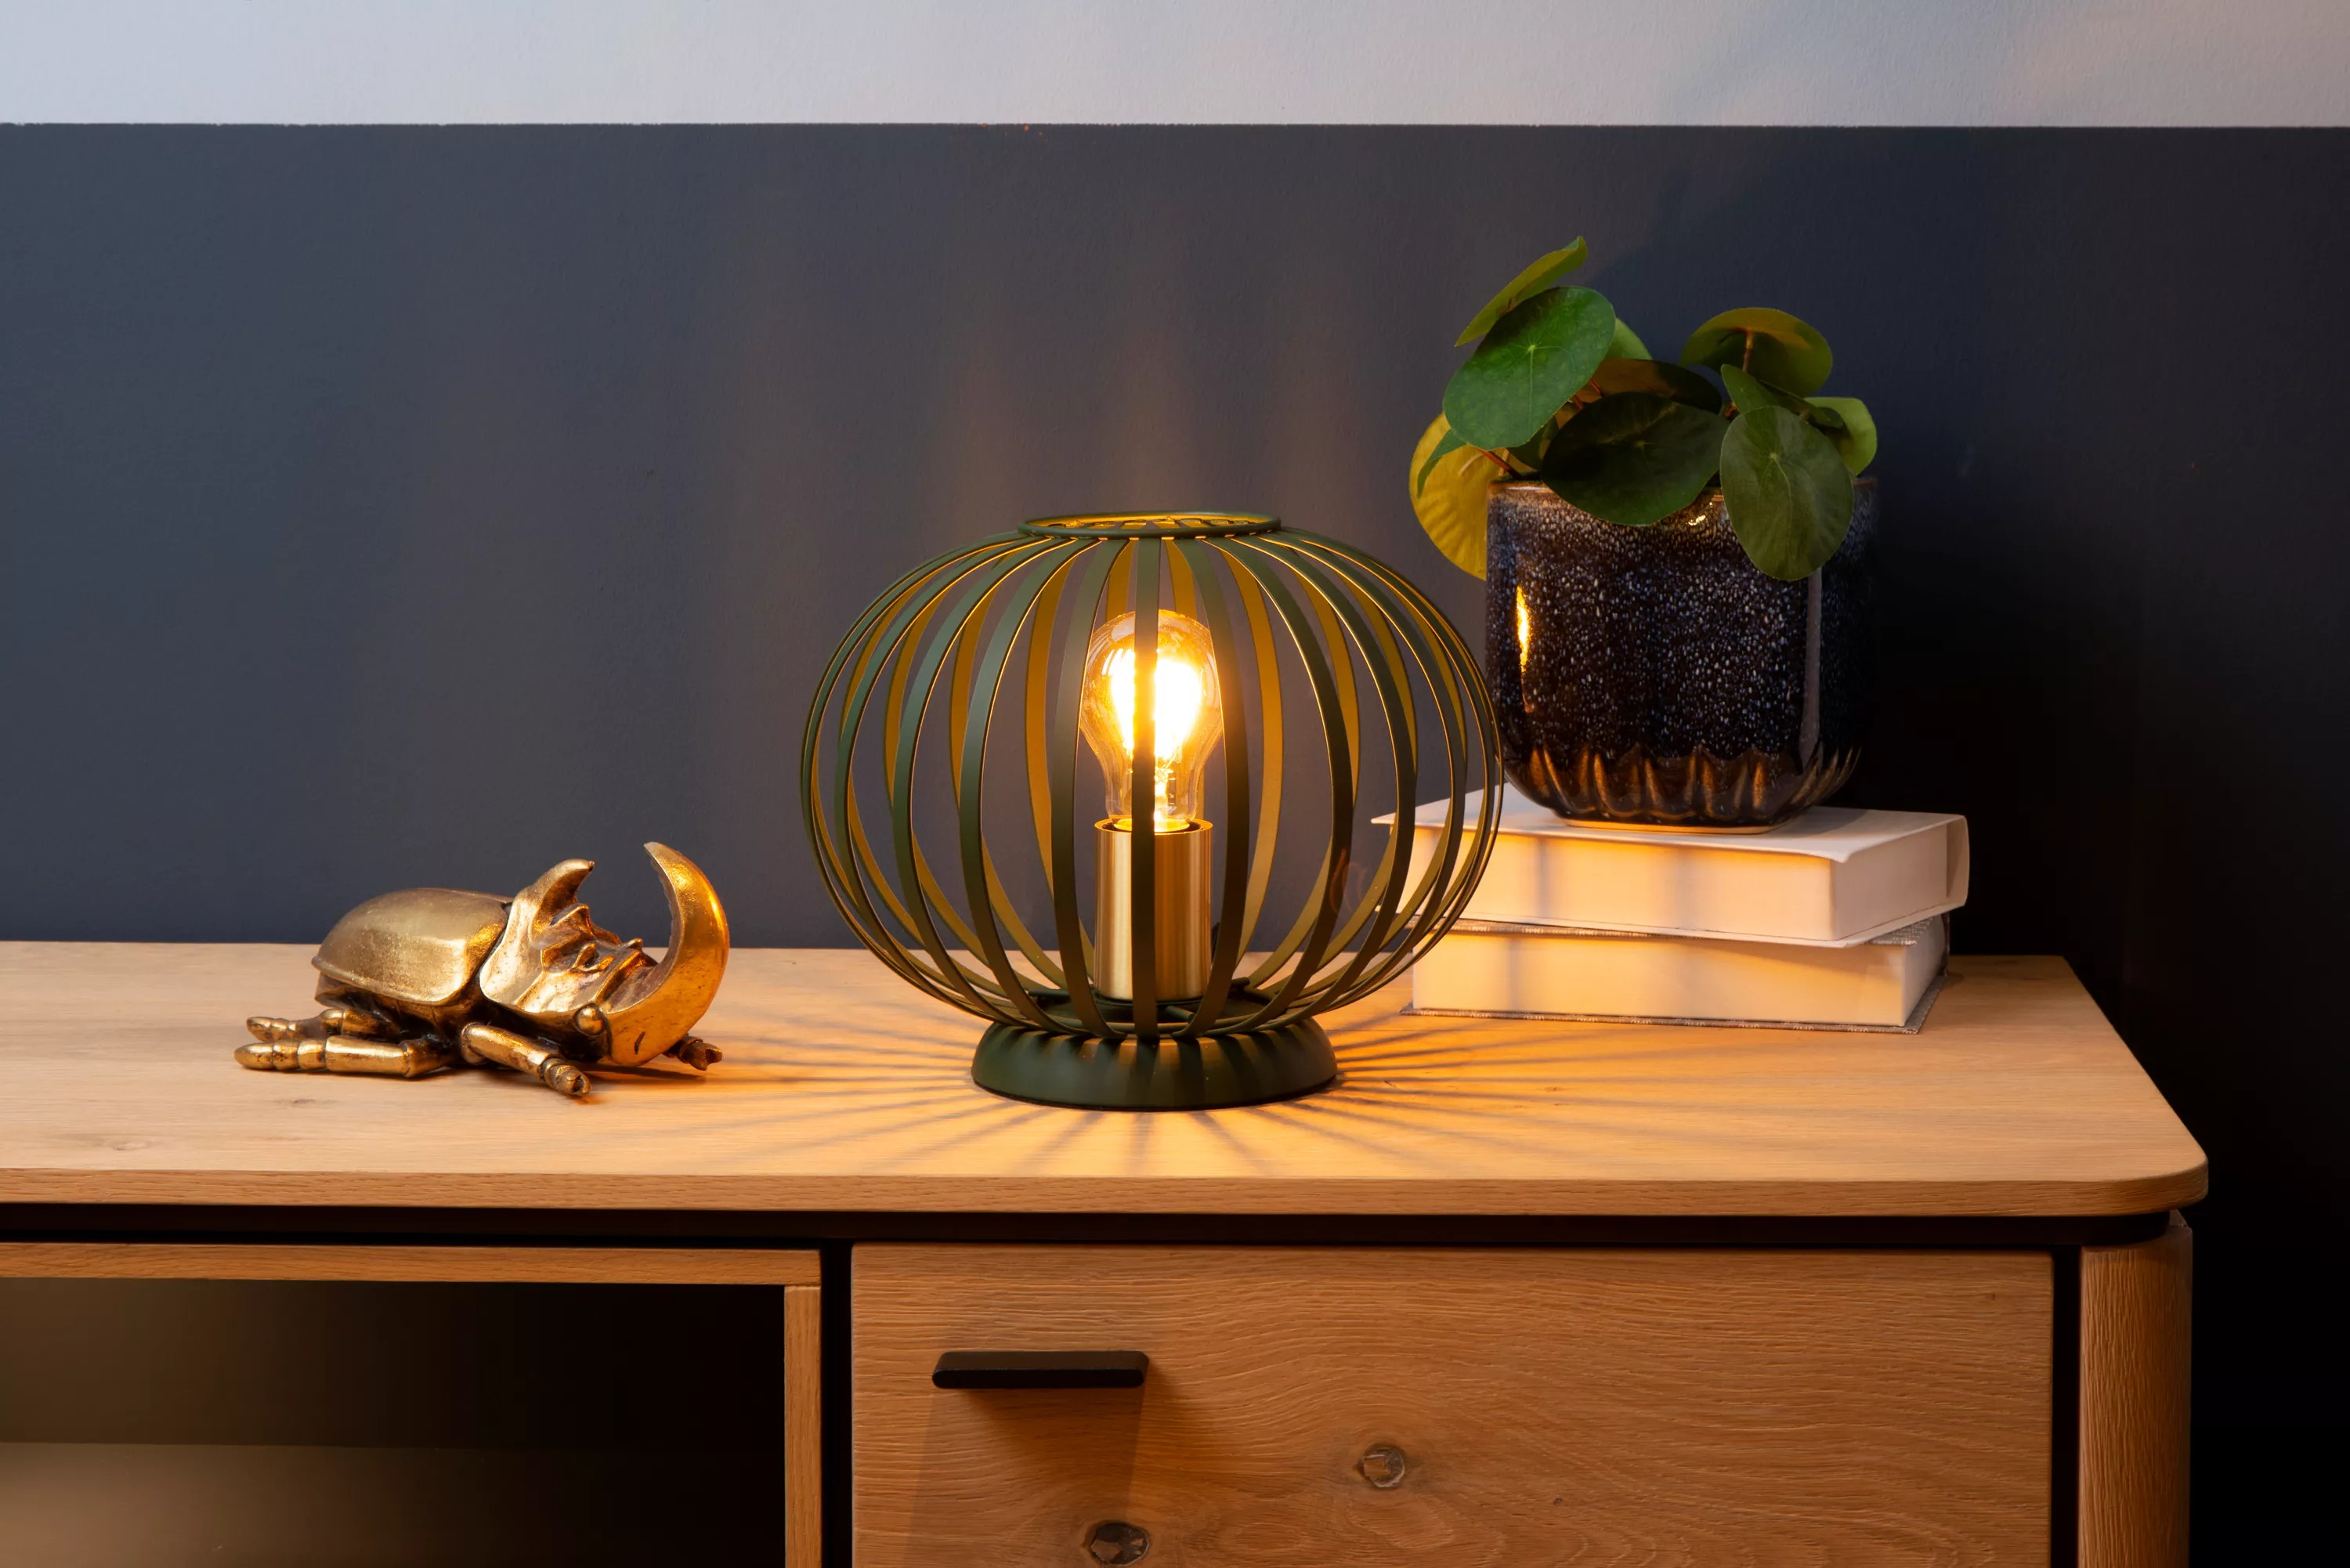 Modernú stolovú lampičku Manuela tvoria drôty v zelenom vyhotovení, hodí sa do moderného interiéru i domu vo vidieckom štýle.